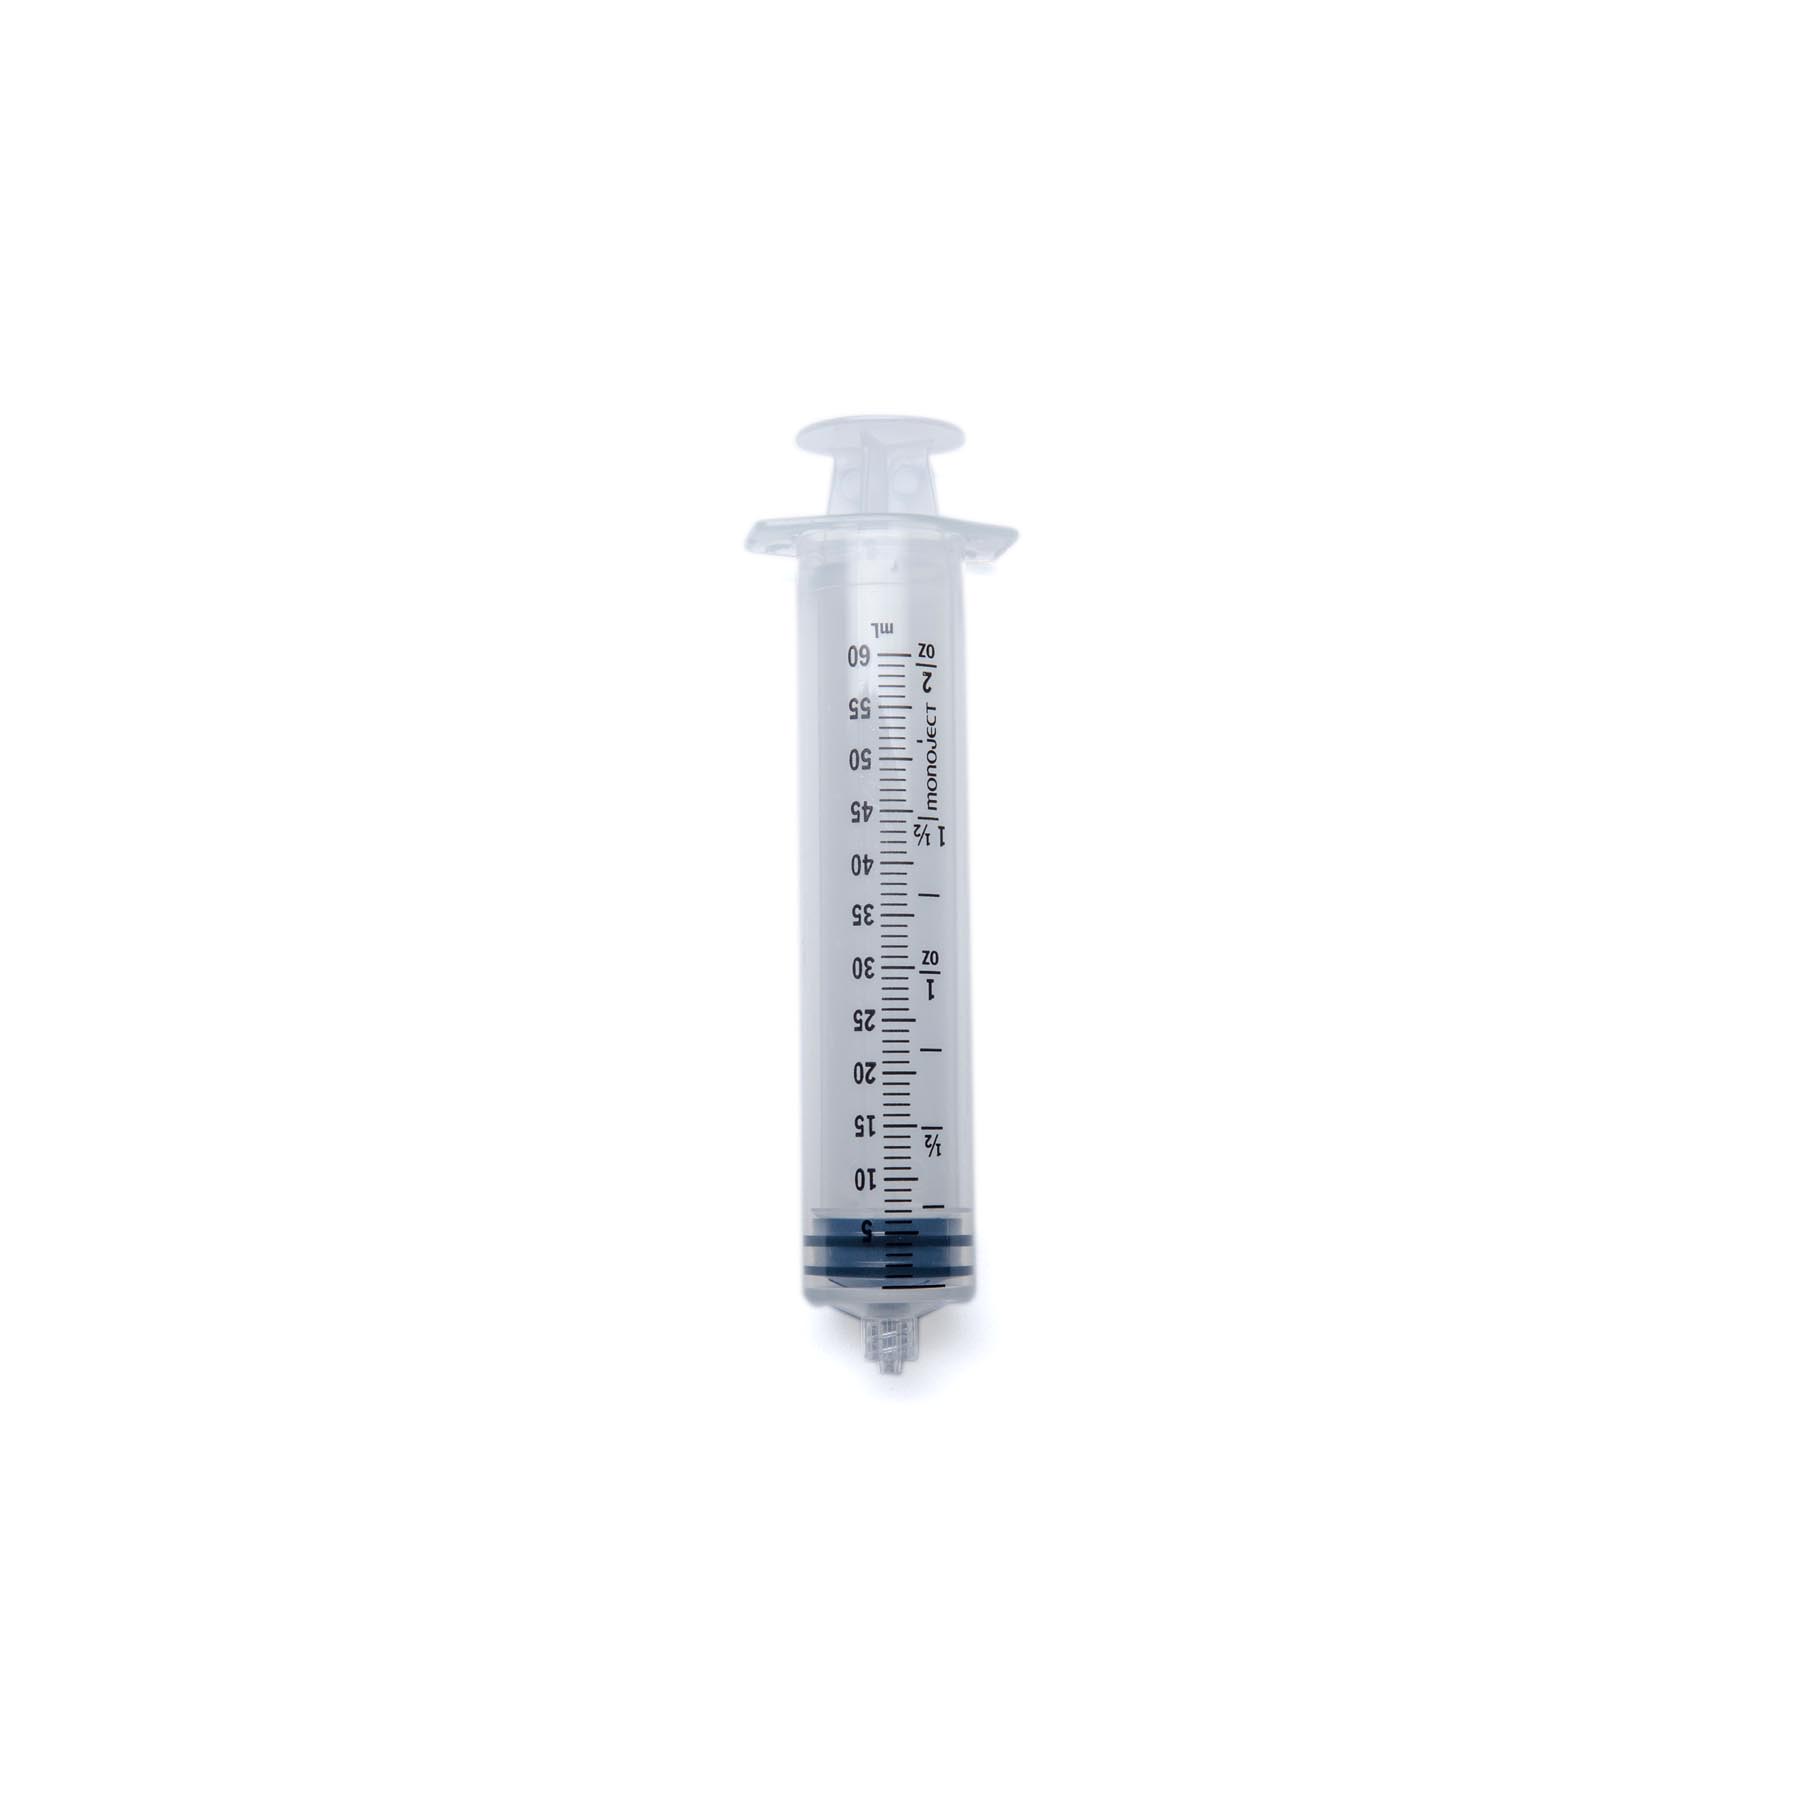 Monoject 3mL Syringes, Slip, Regular & Luer Lock Tip